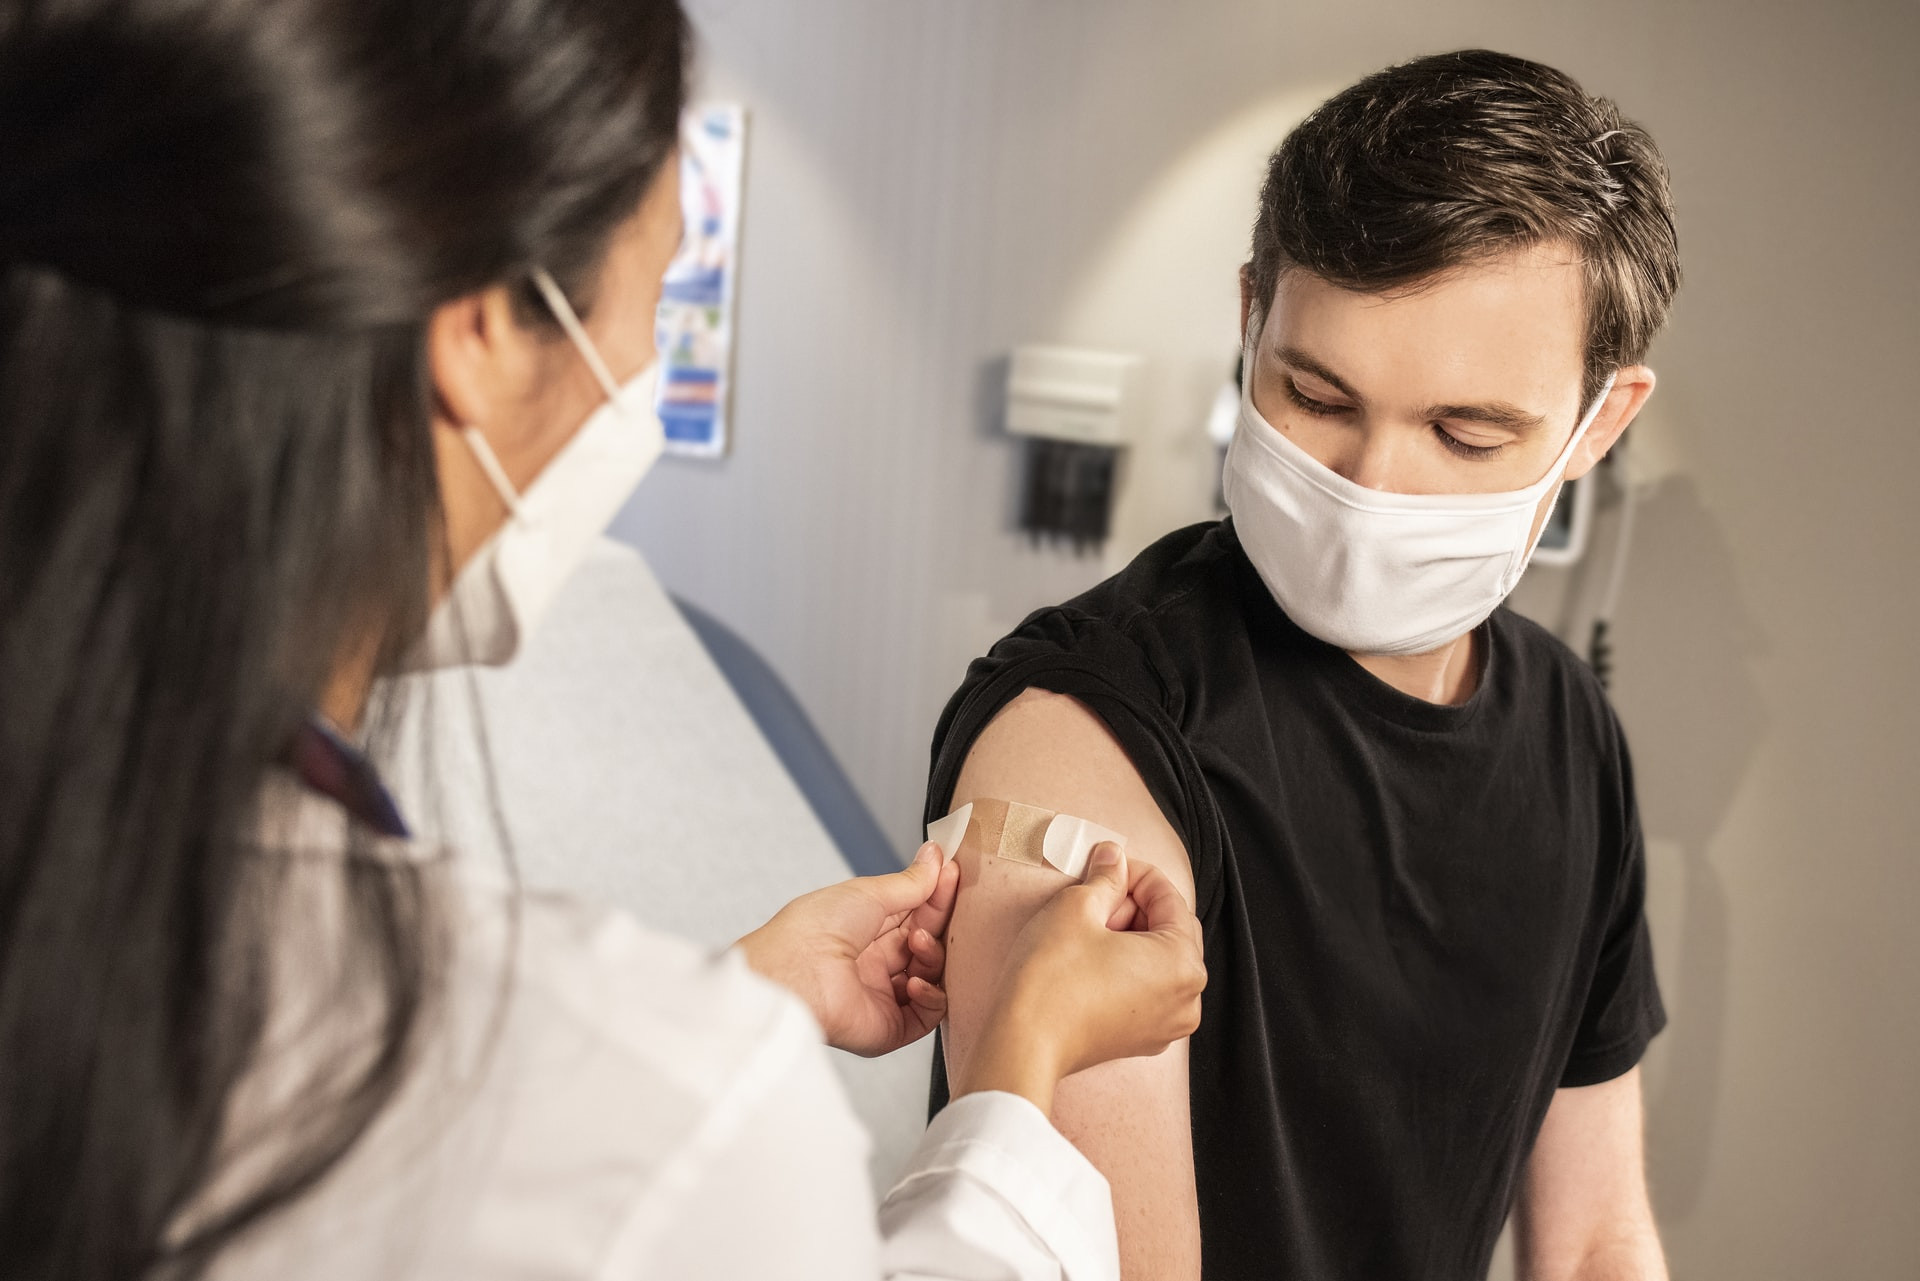 Cepljenje močno zmanjša verjetnost za okužbo in ščiti pred težjim potekom bolezni